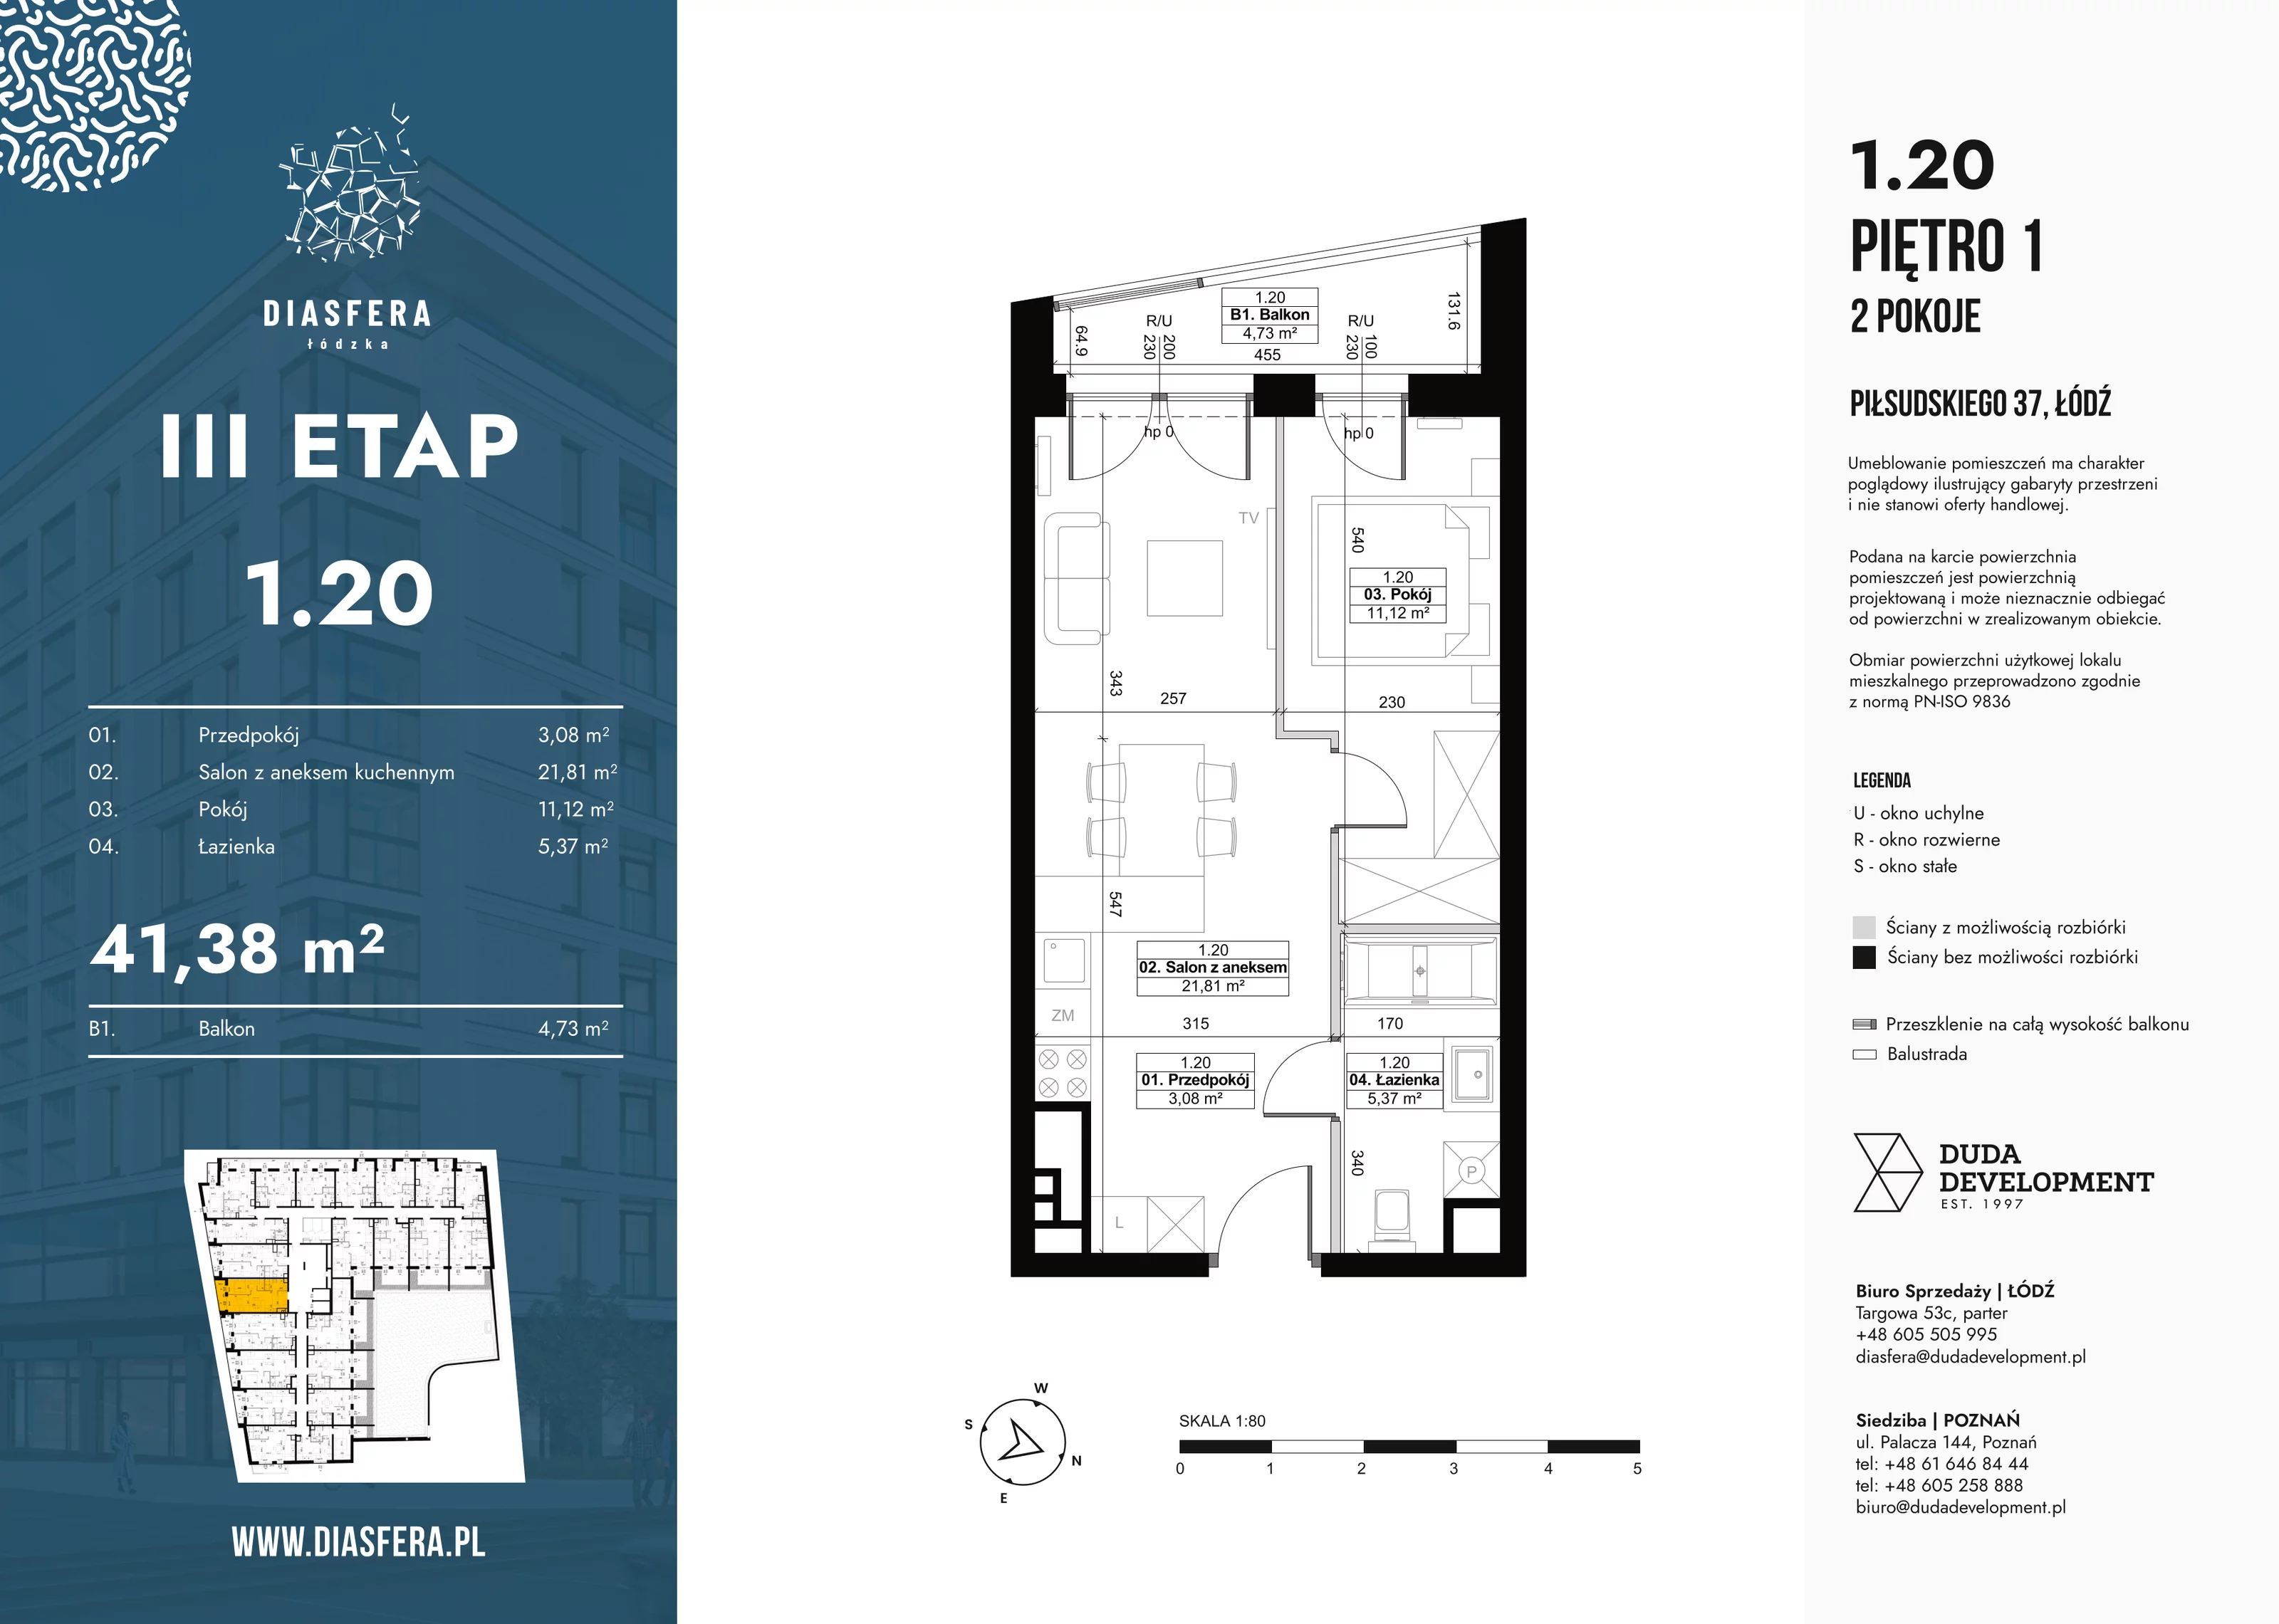 Mieszkanie 41,38 m², piętro 1, oferta nr 1_20, Diasfera III, Łódź, Śródmieście, al. Piłsudskiego 37